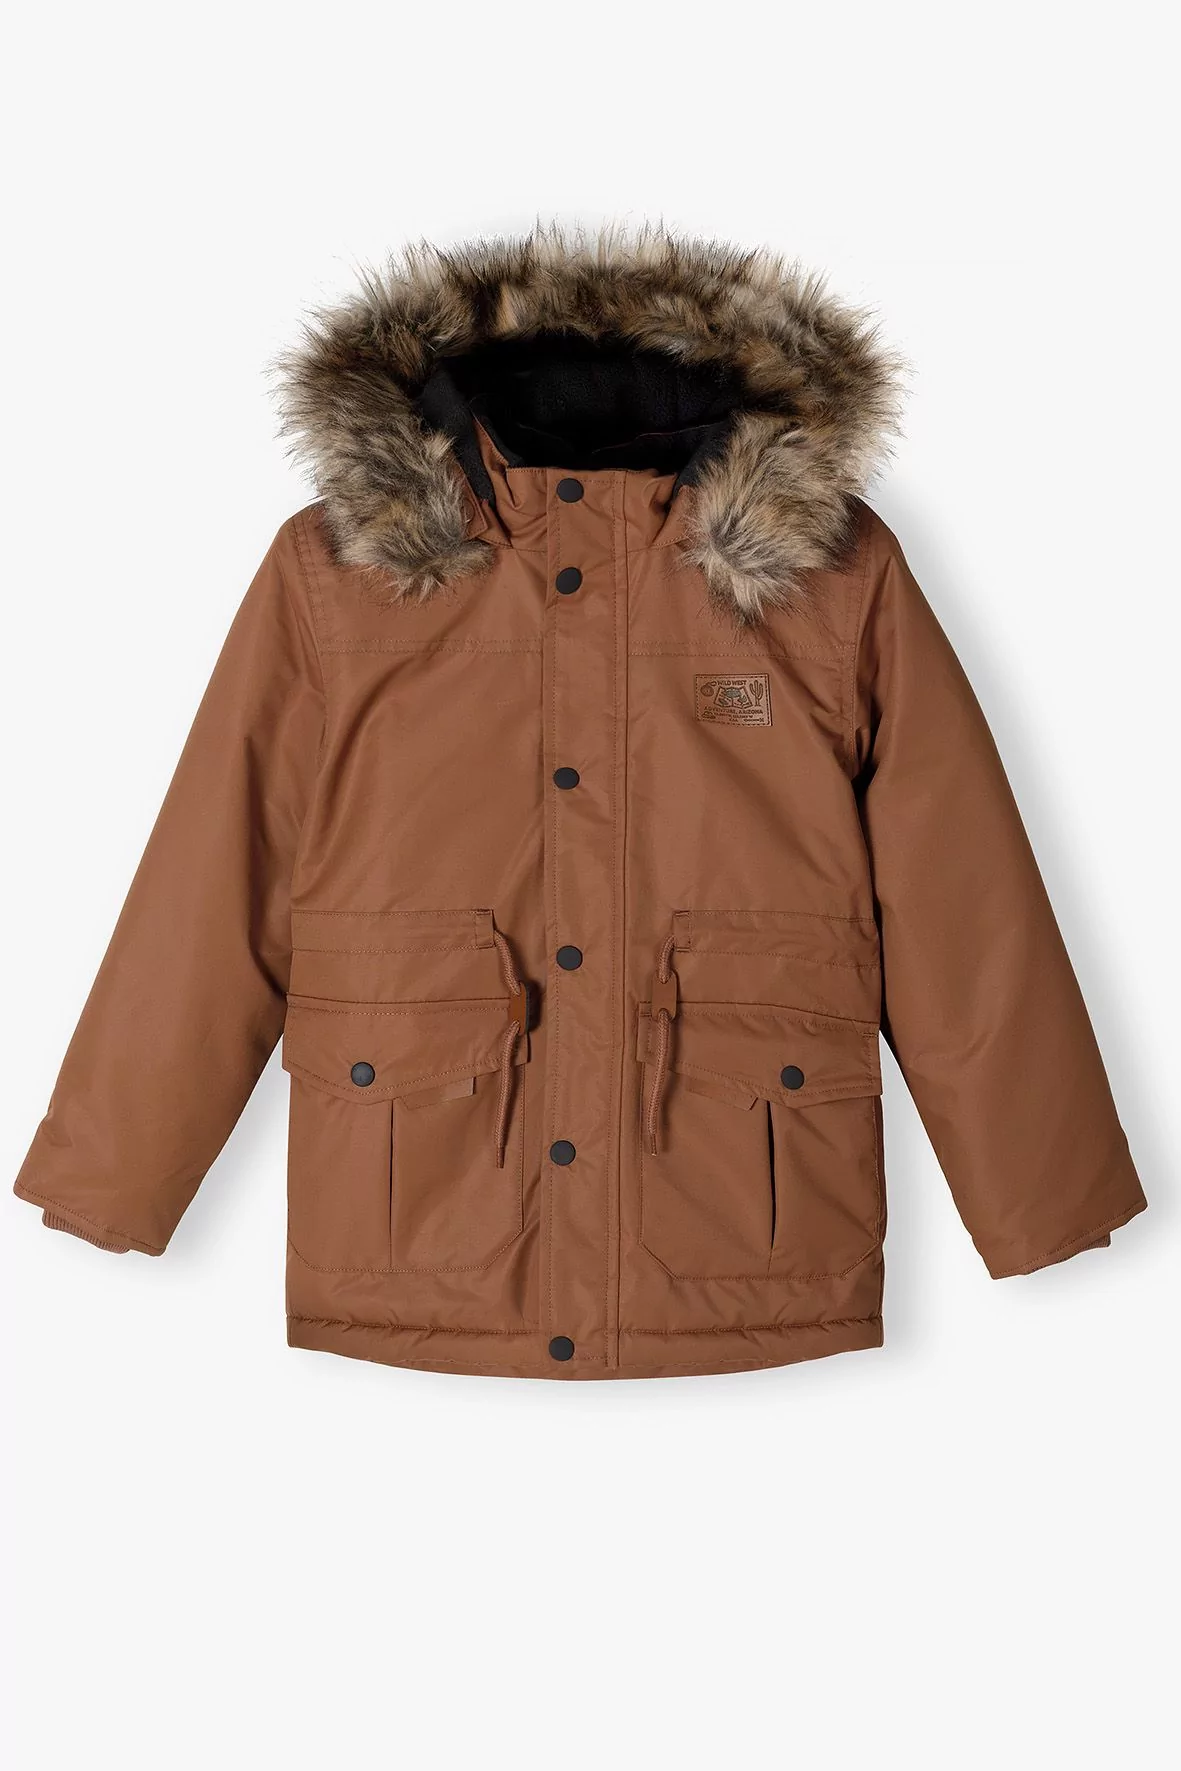 Brązowa kurtka zimowa typu parka dla chłopca z kapturem - Ceny i opinie na | Parkas